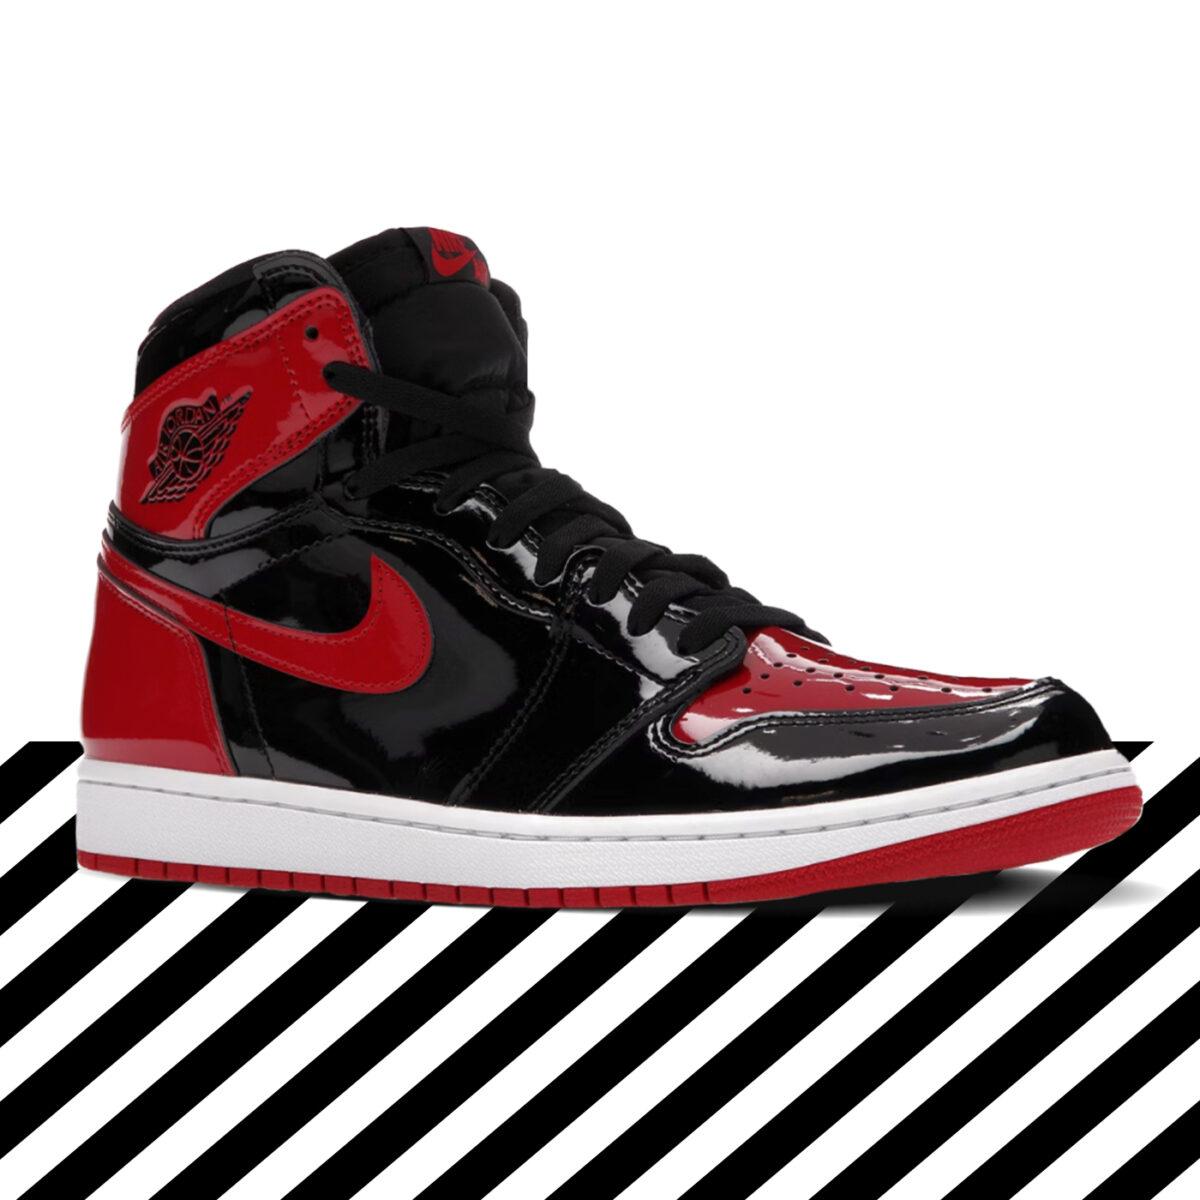 Air Jordan or Yeezy, what are 2020's bestselling sneakers? StockX